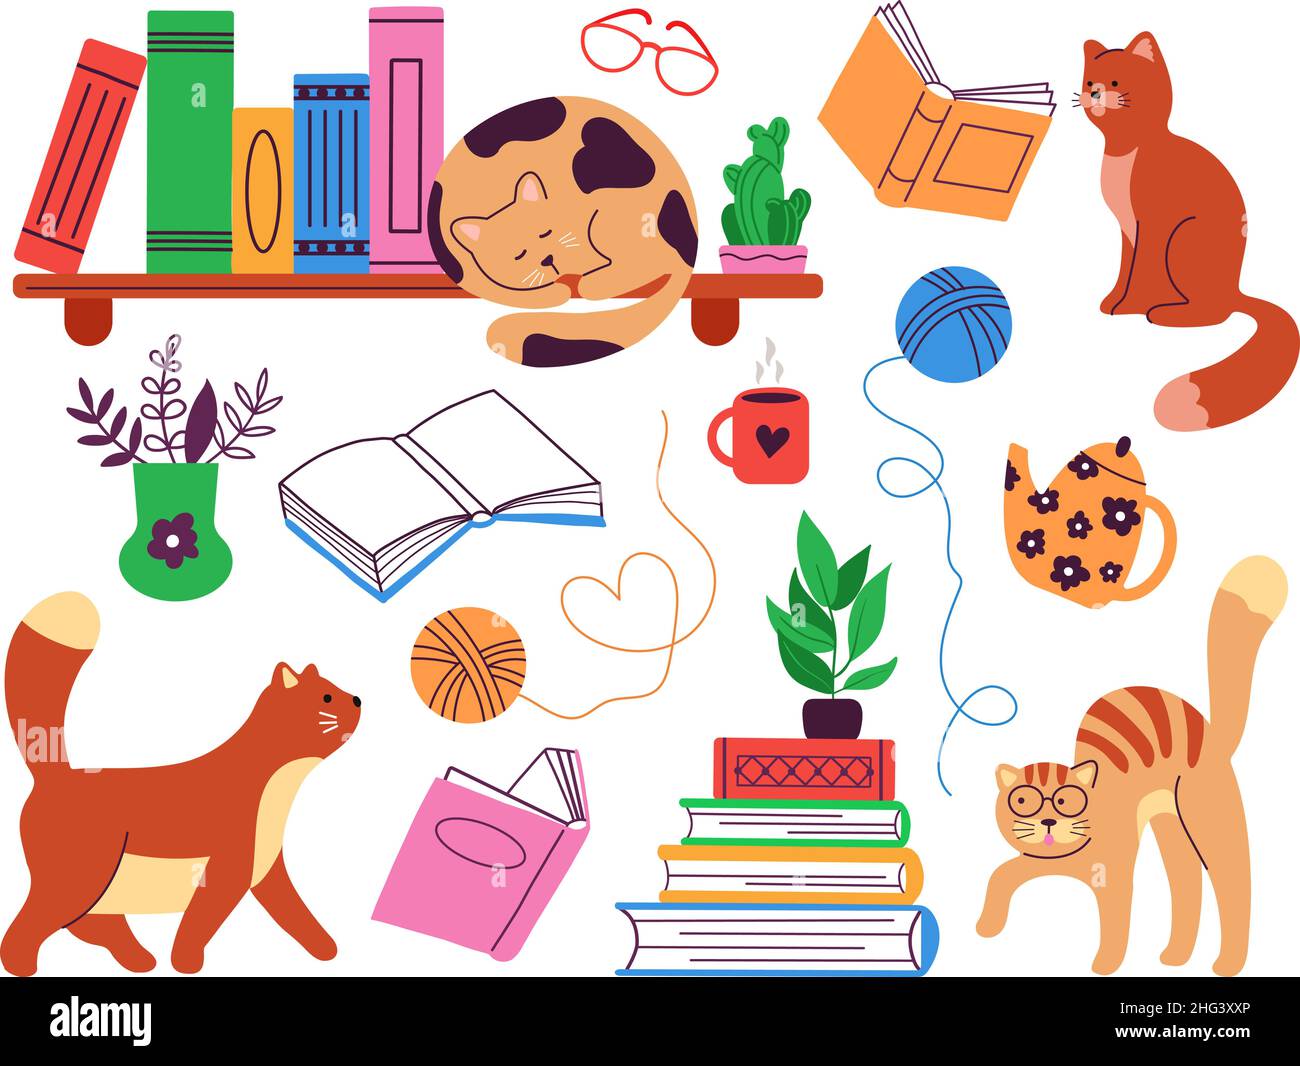 Bücher und Katzen. Studieren Sie Katzen- und Buchstapel, Hygge-Elemente in der Buchhandlung. Lesen oder Geschichten erzählen, gemütliche Bibliothek Bücherregale. Studieren Sie anständige Vektorelemente Stock Vektor